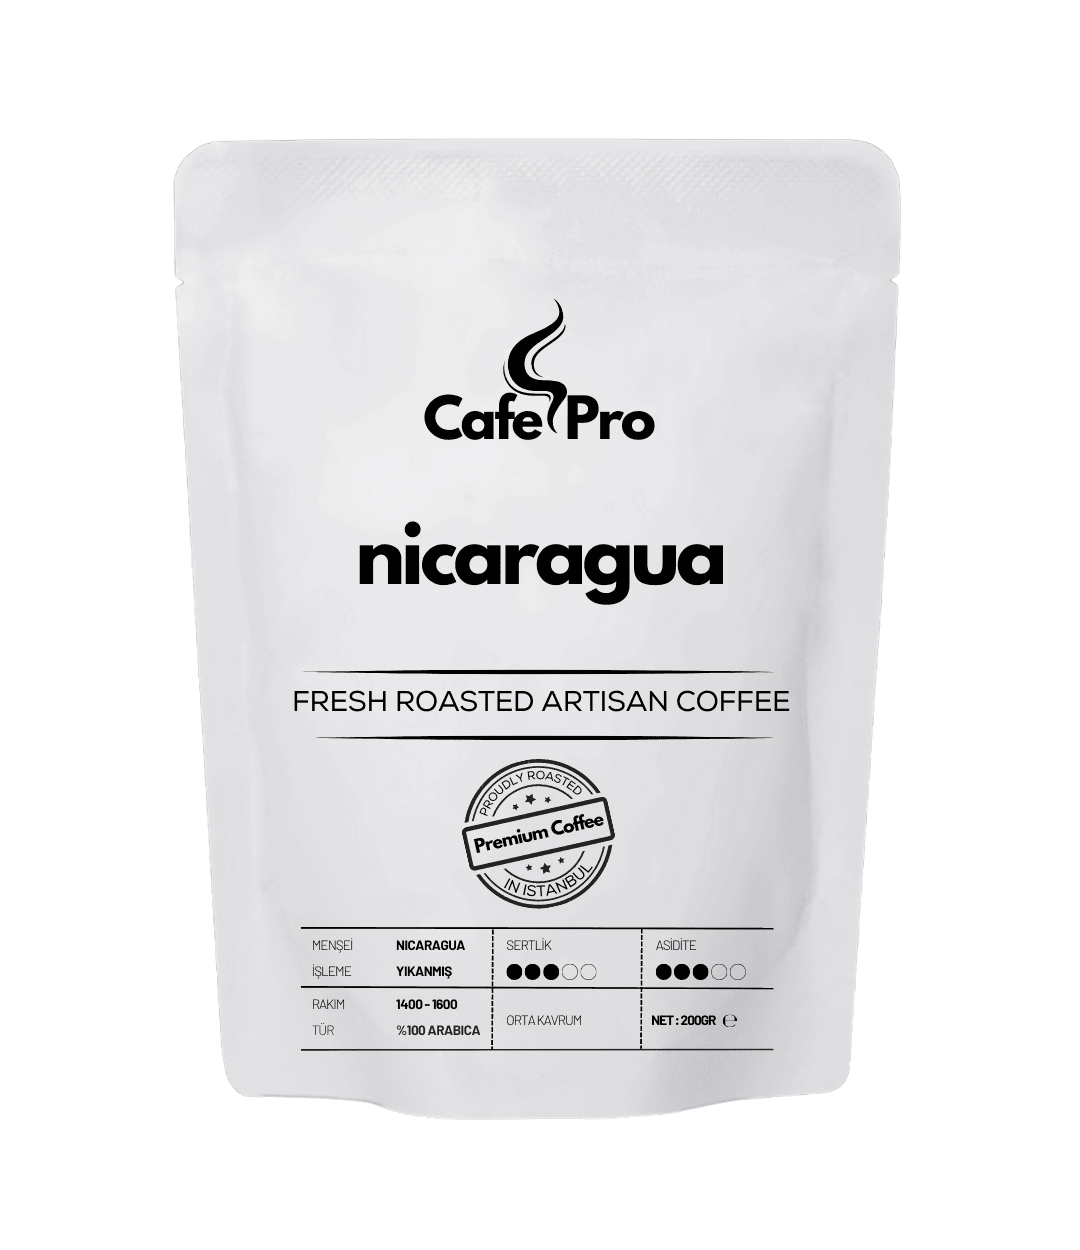 CafePro Nicaragua Single Origin